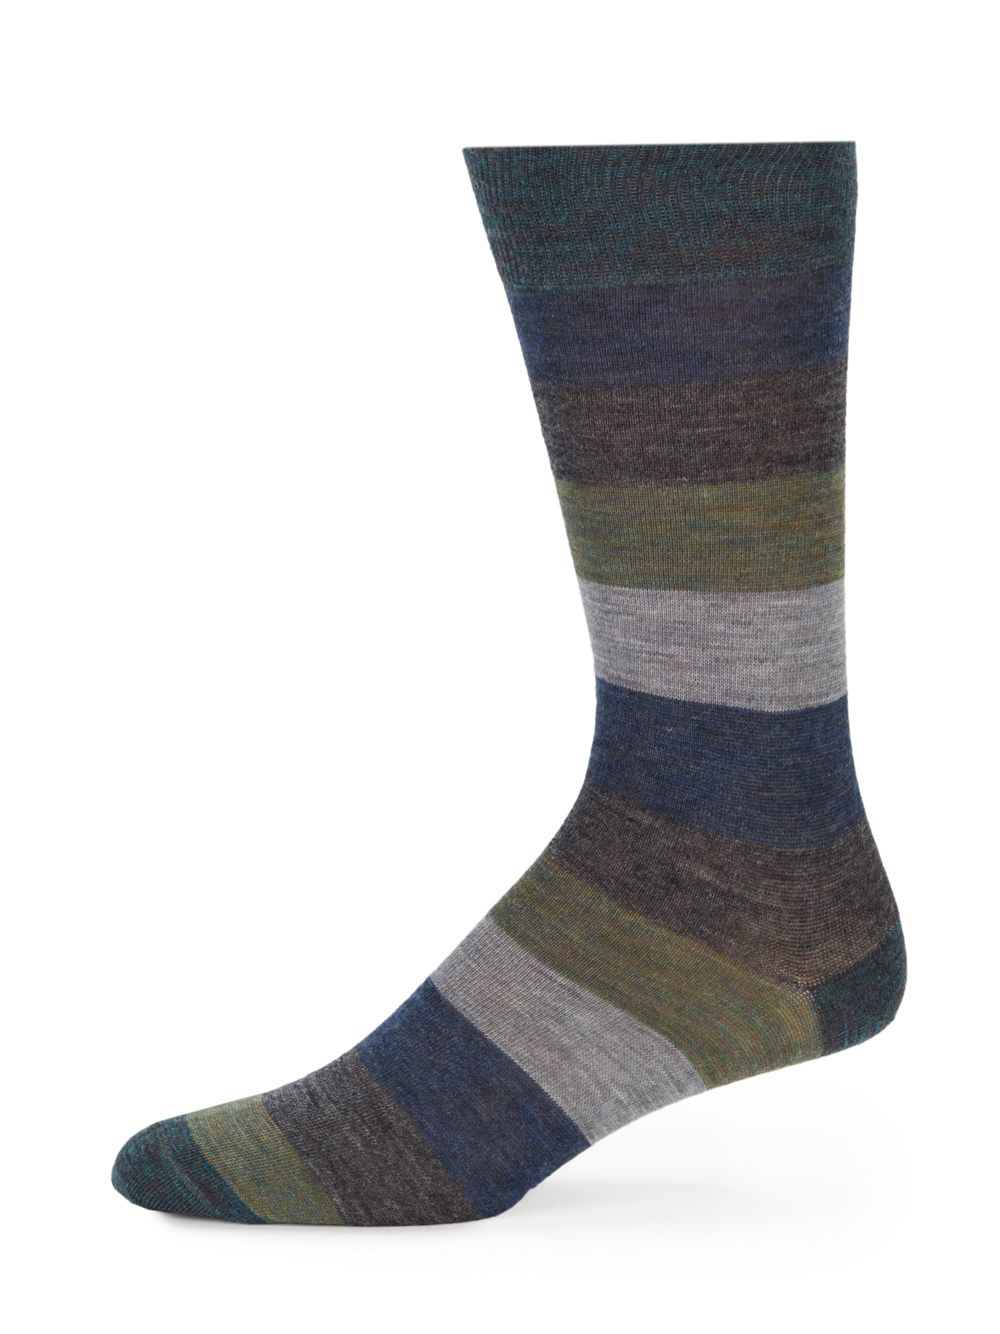 Lyst - Saks Fifth Avenue Striped Merino Wool-blend Socks in Blue for Men